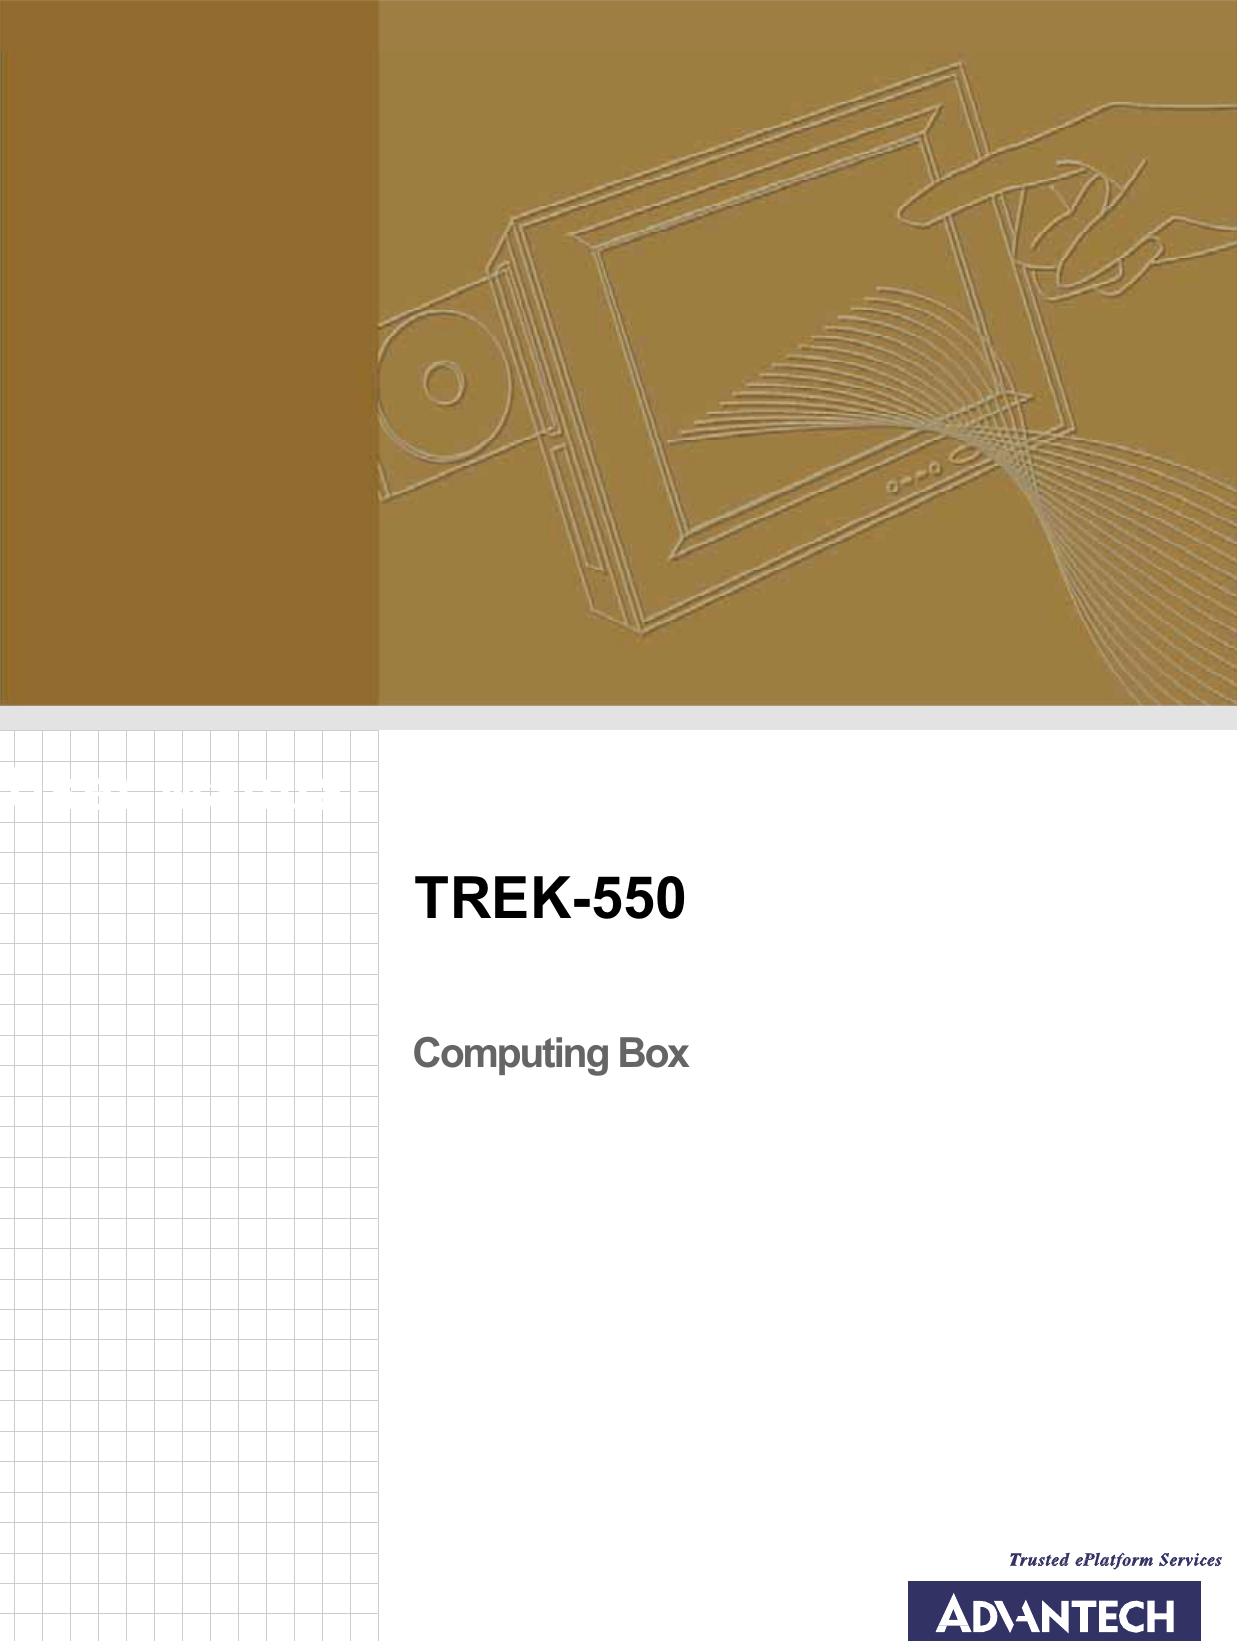 User ManualTREK-550Computing Box